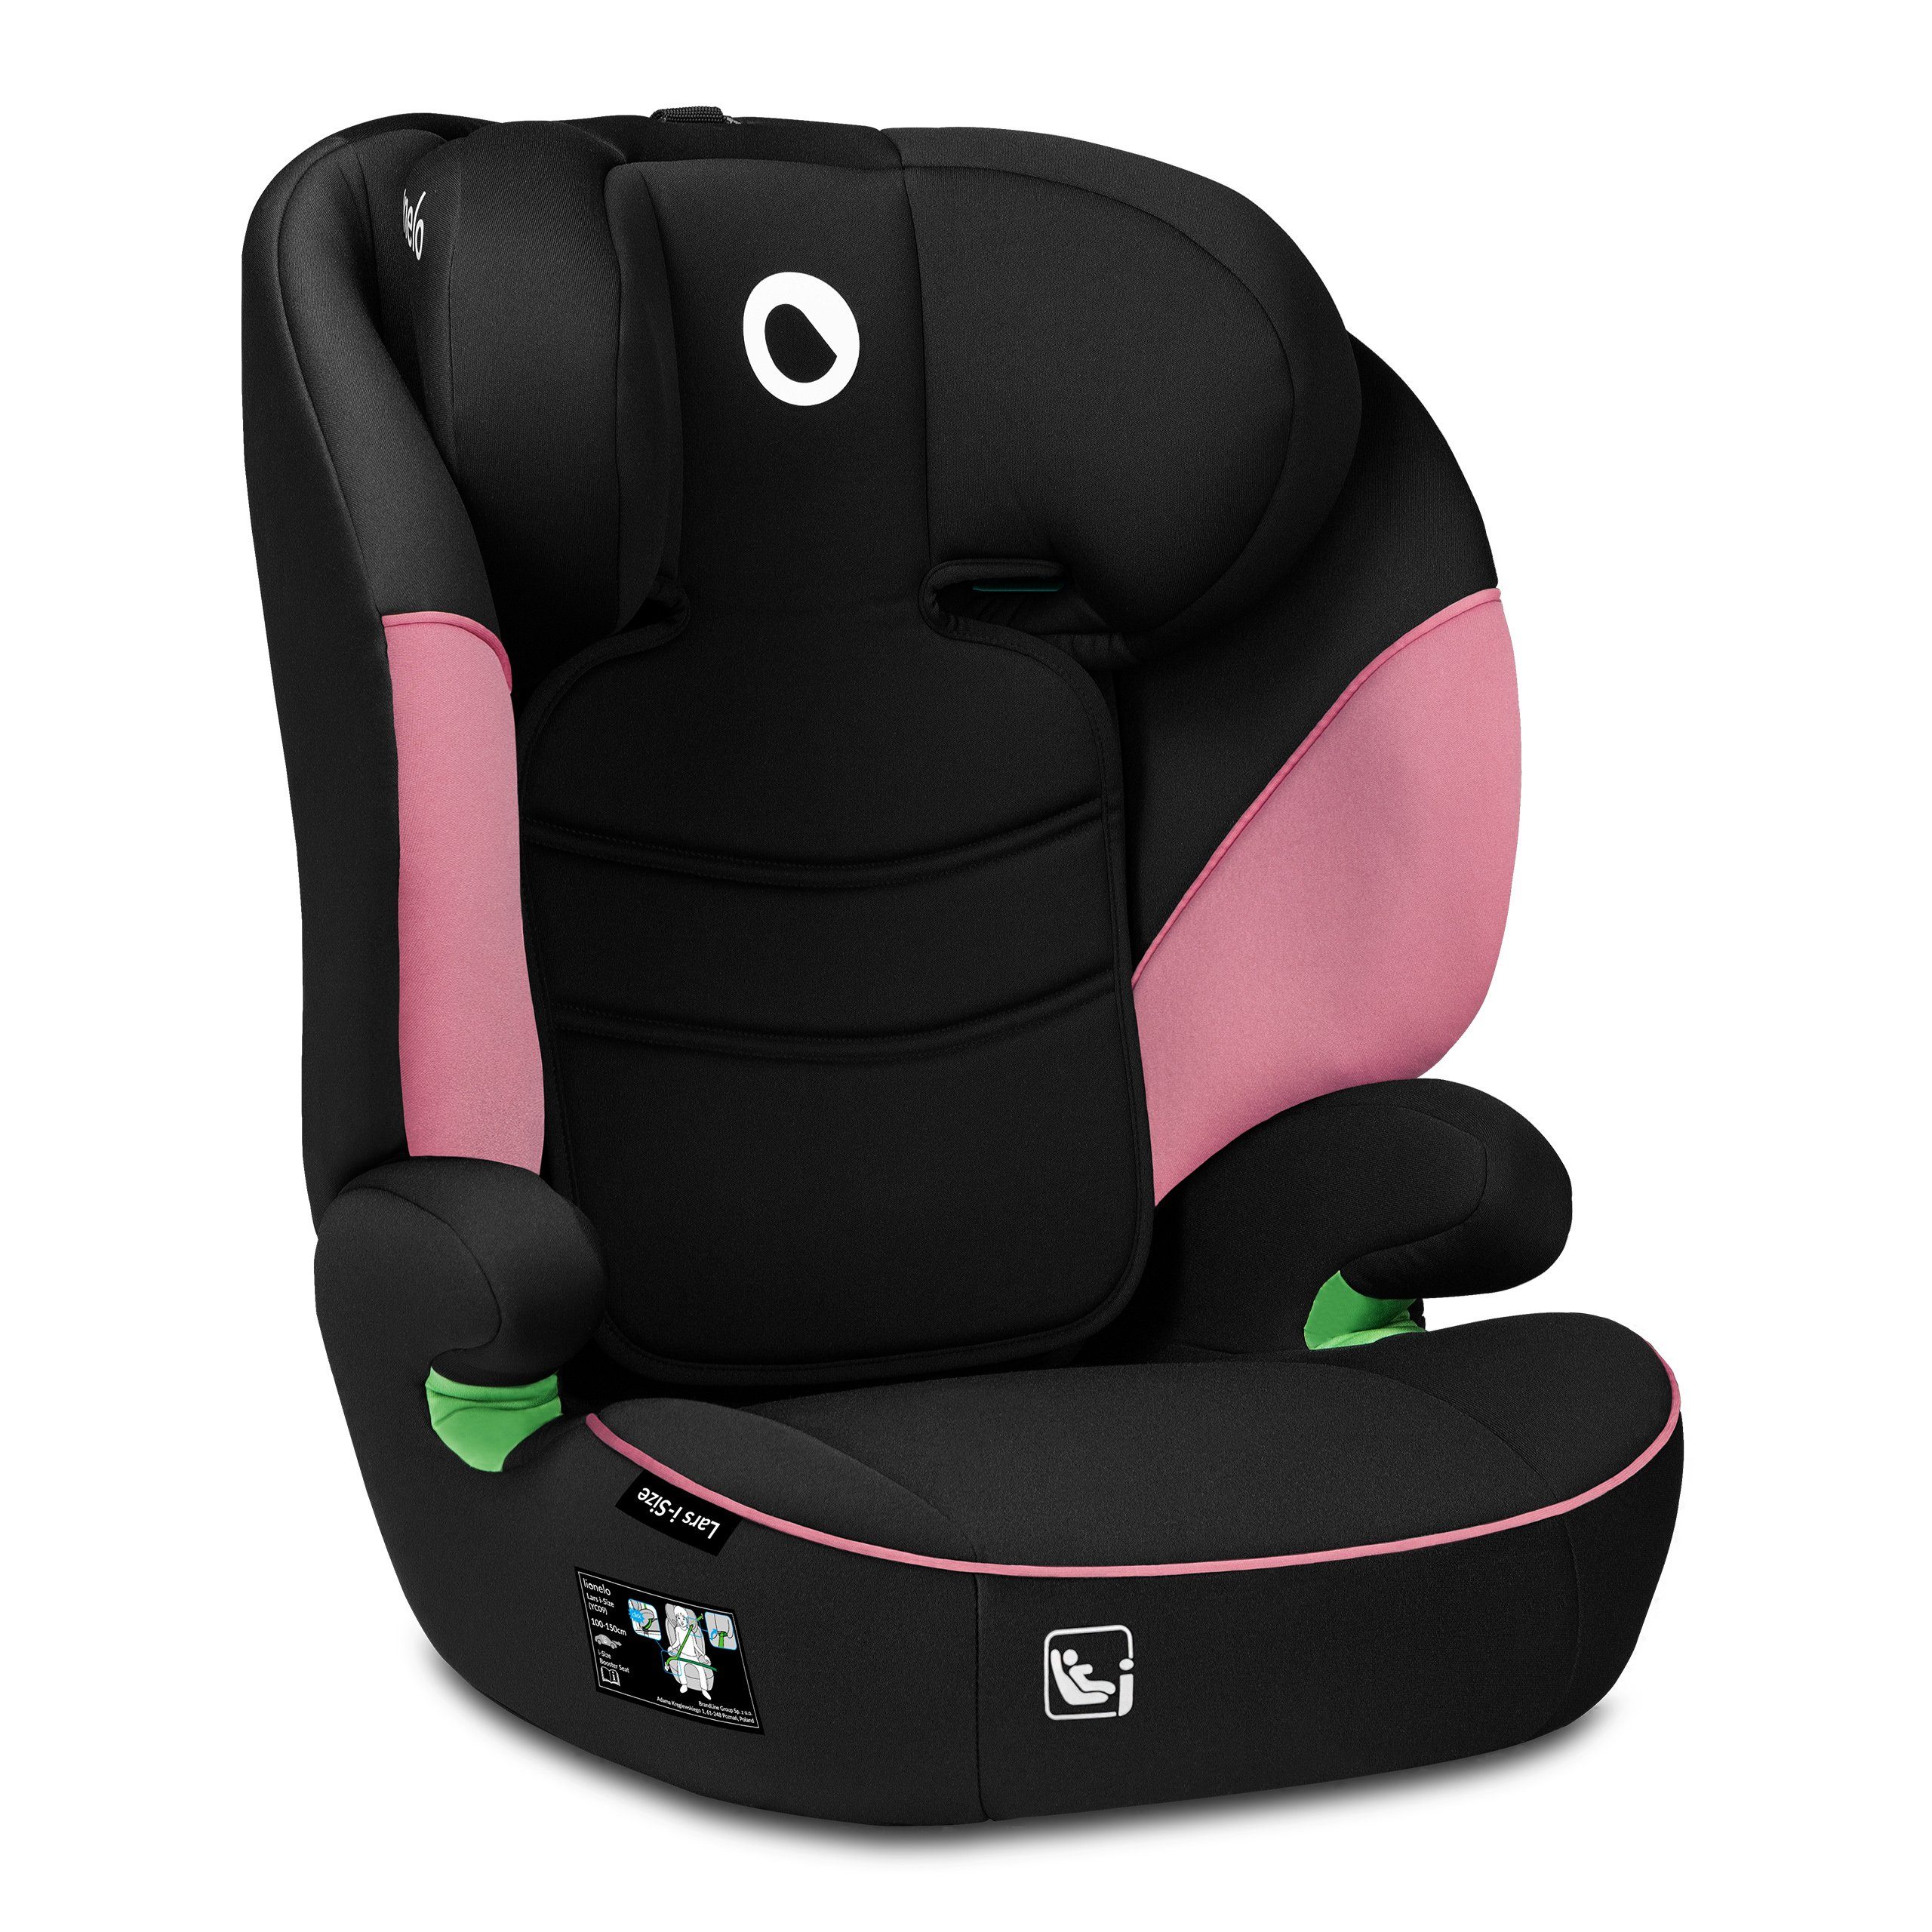 Blijr Uniek Grau Autositz Kindersitz für Kinder ab 3,5 bis 12 Jahren  Höhenverstellbar bis 150cm